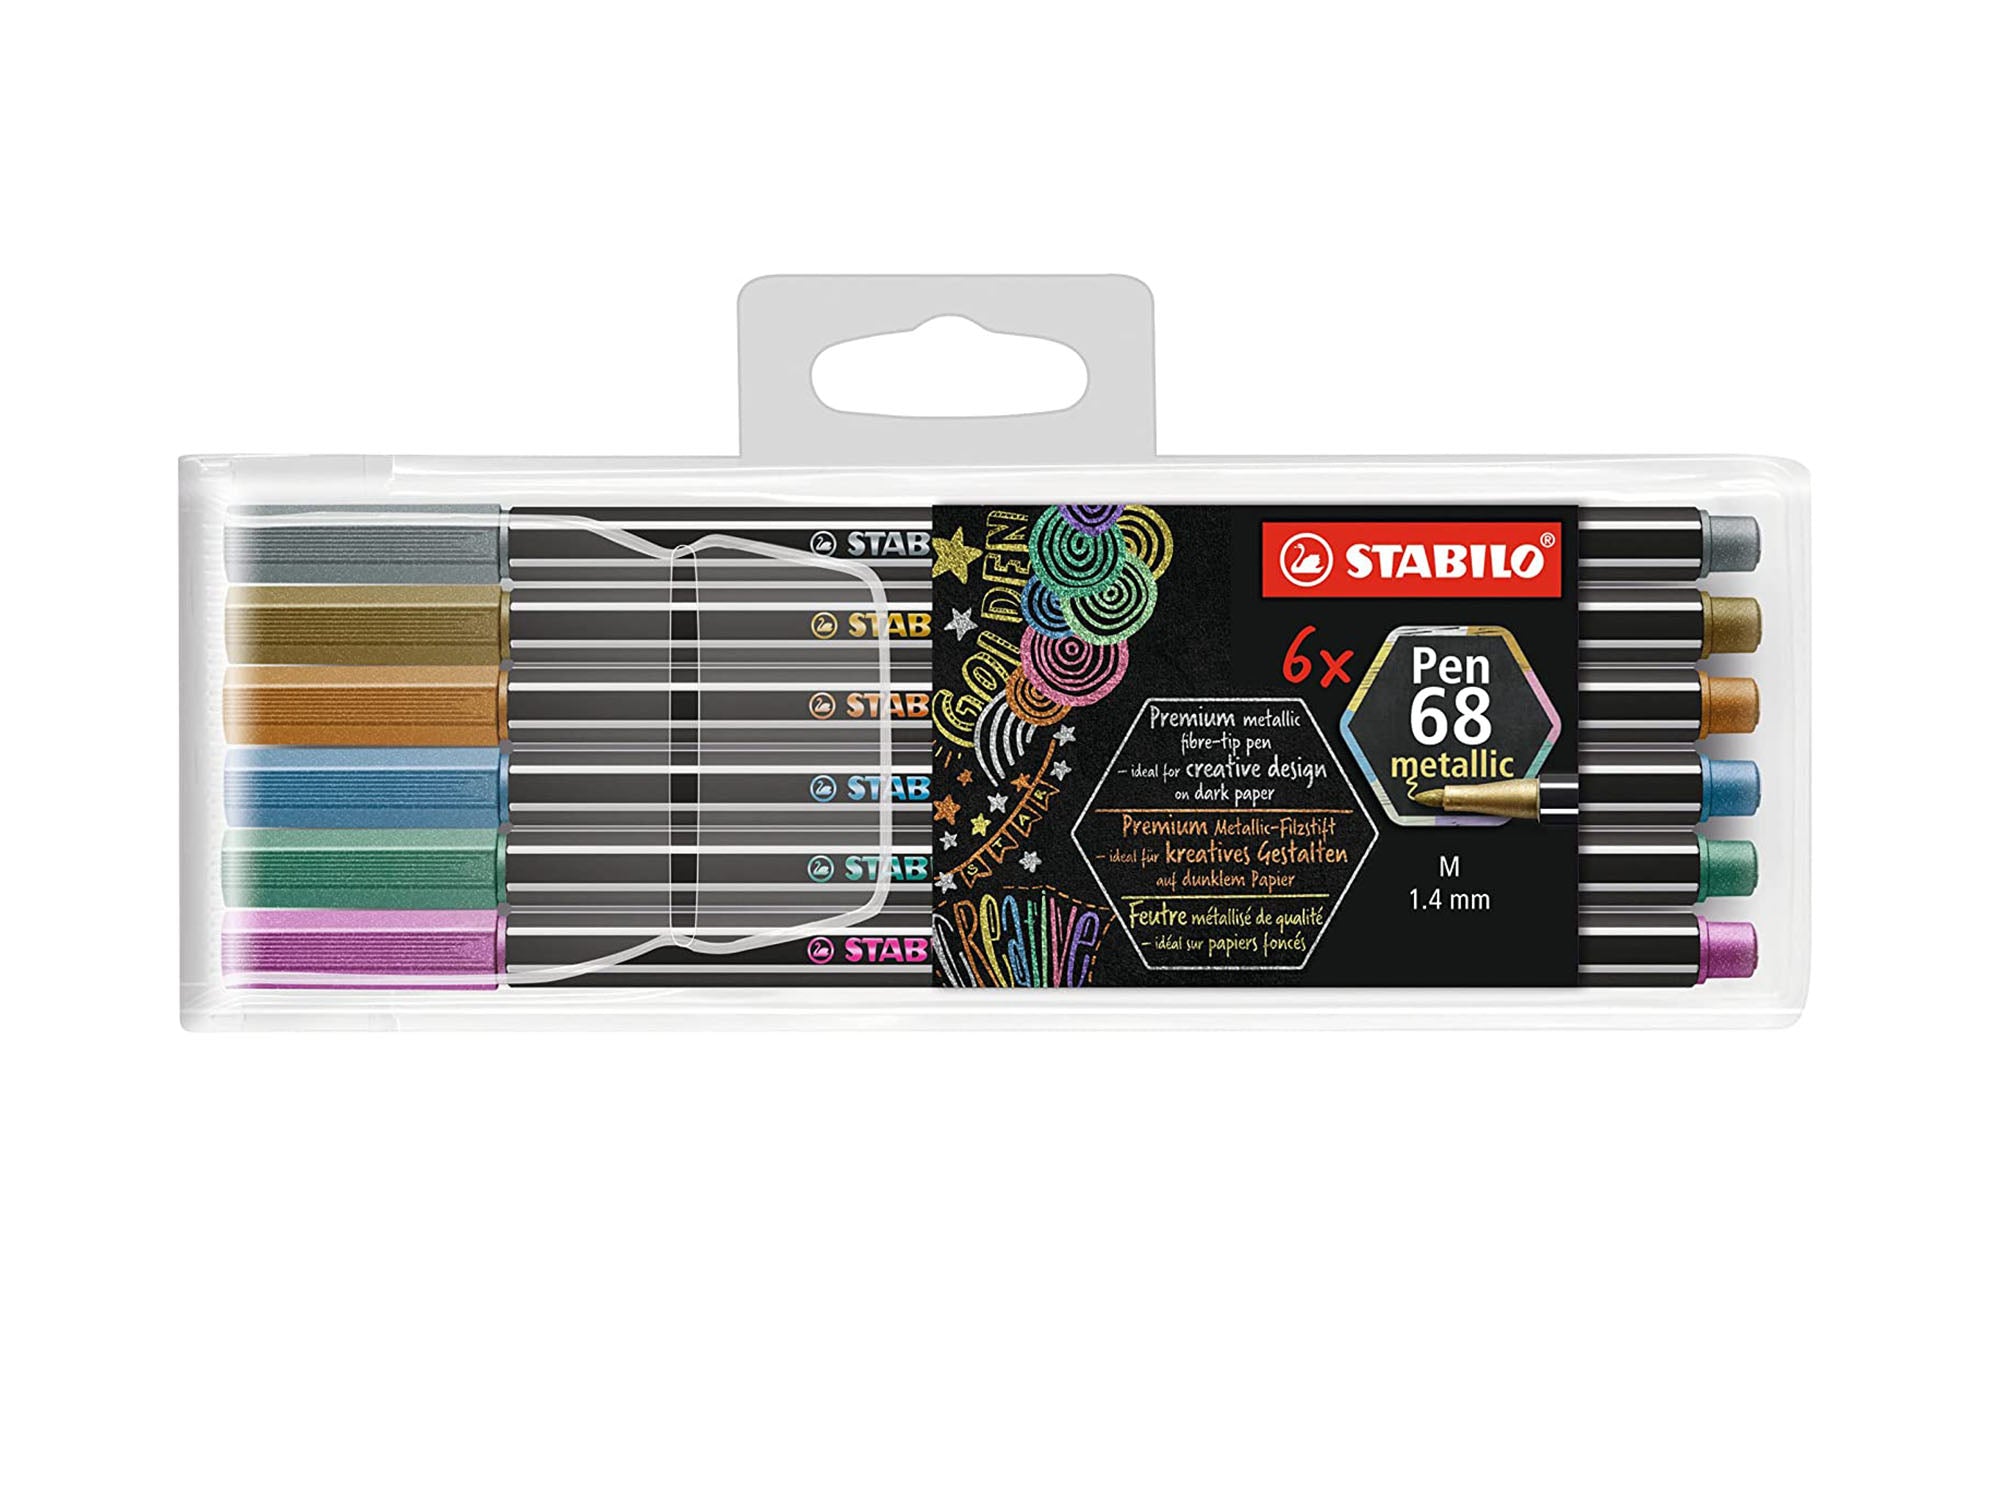 Stabilo Pen 68 Set - Pastel Colors, Set of 8